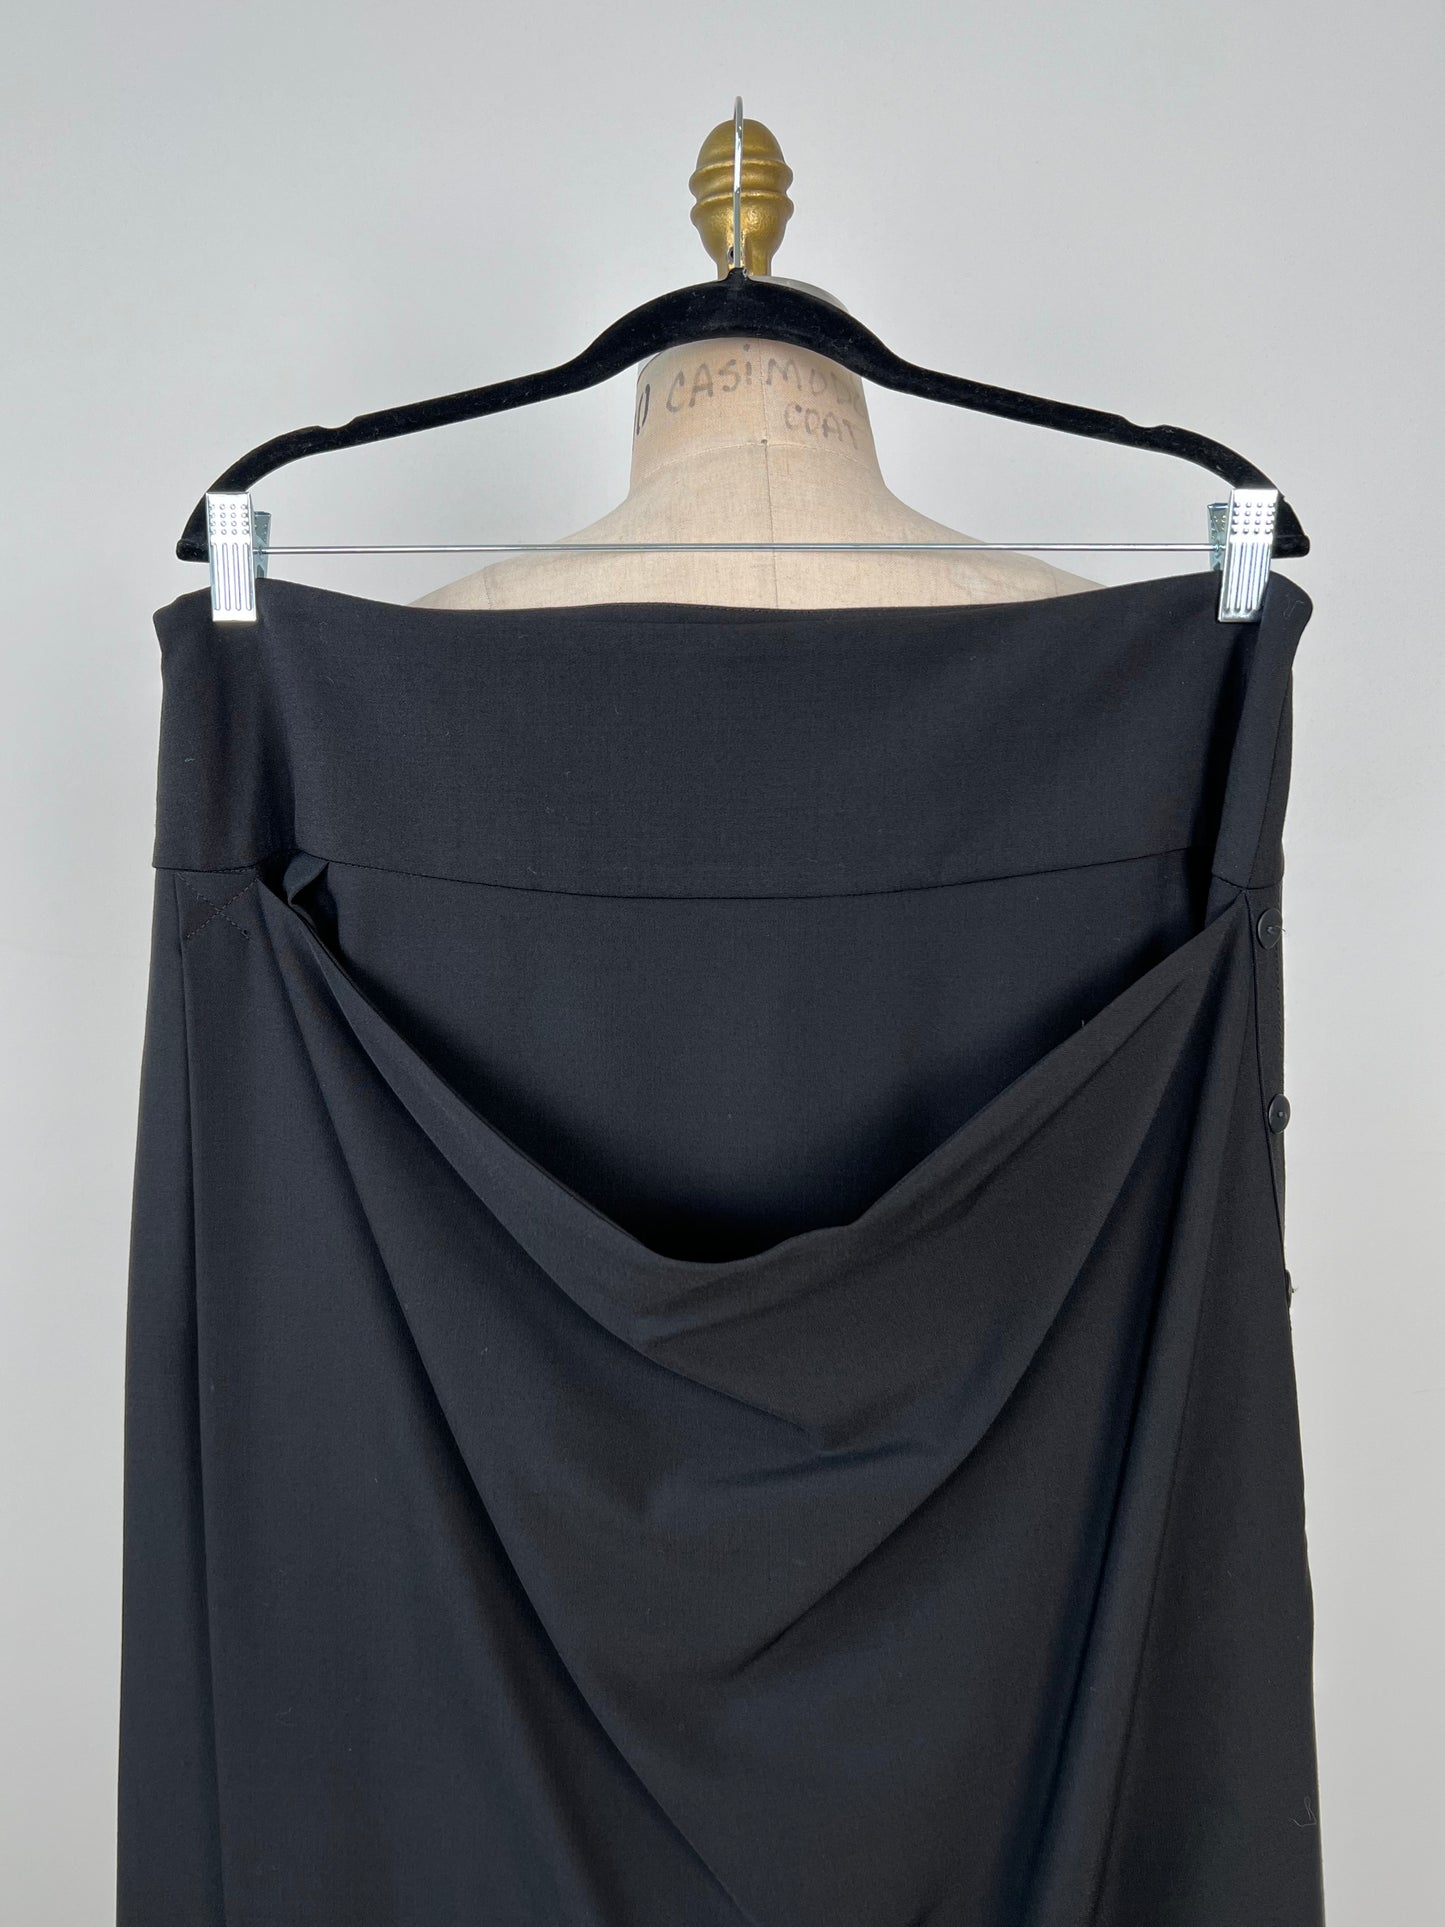 Pantalon noir sarouel asymétrique à pan de jupe (XL)